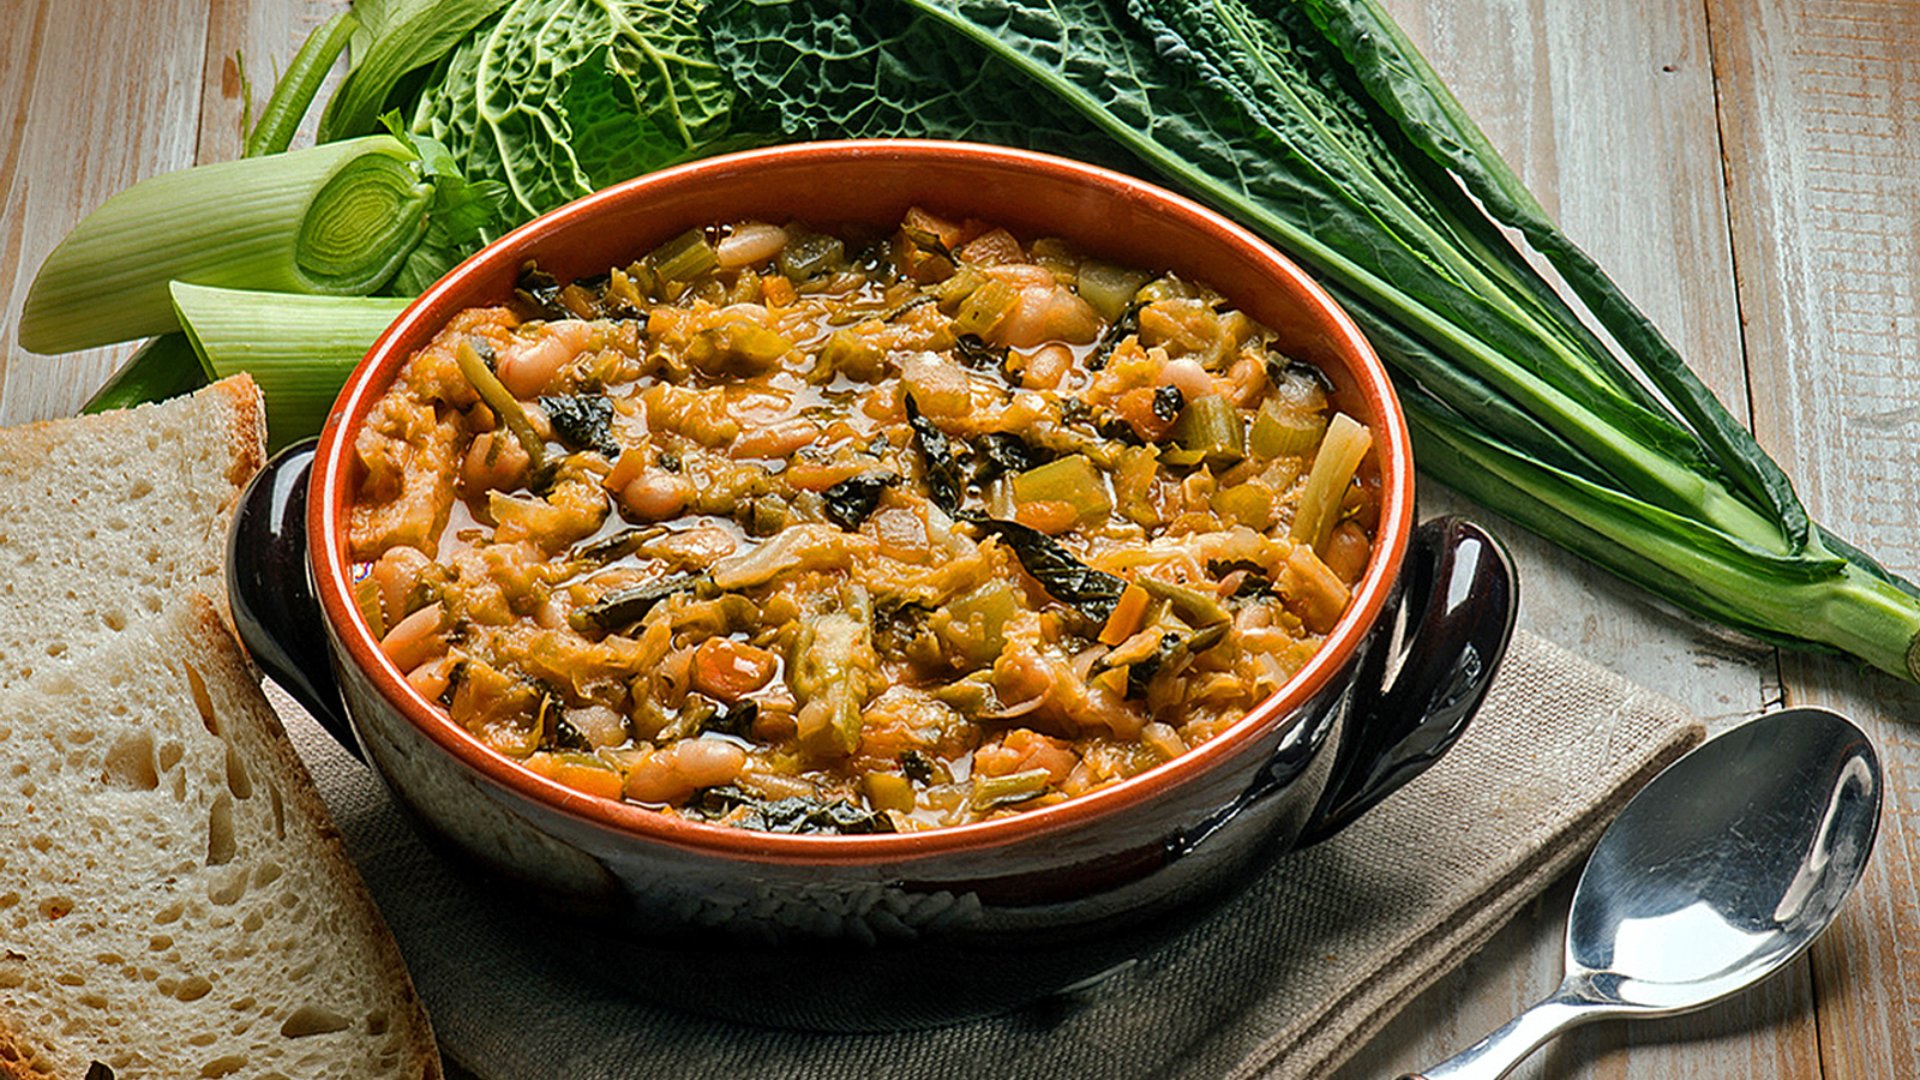 Zuppa, minestra e ribollita: tre piatti tipici della cucina toscana